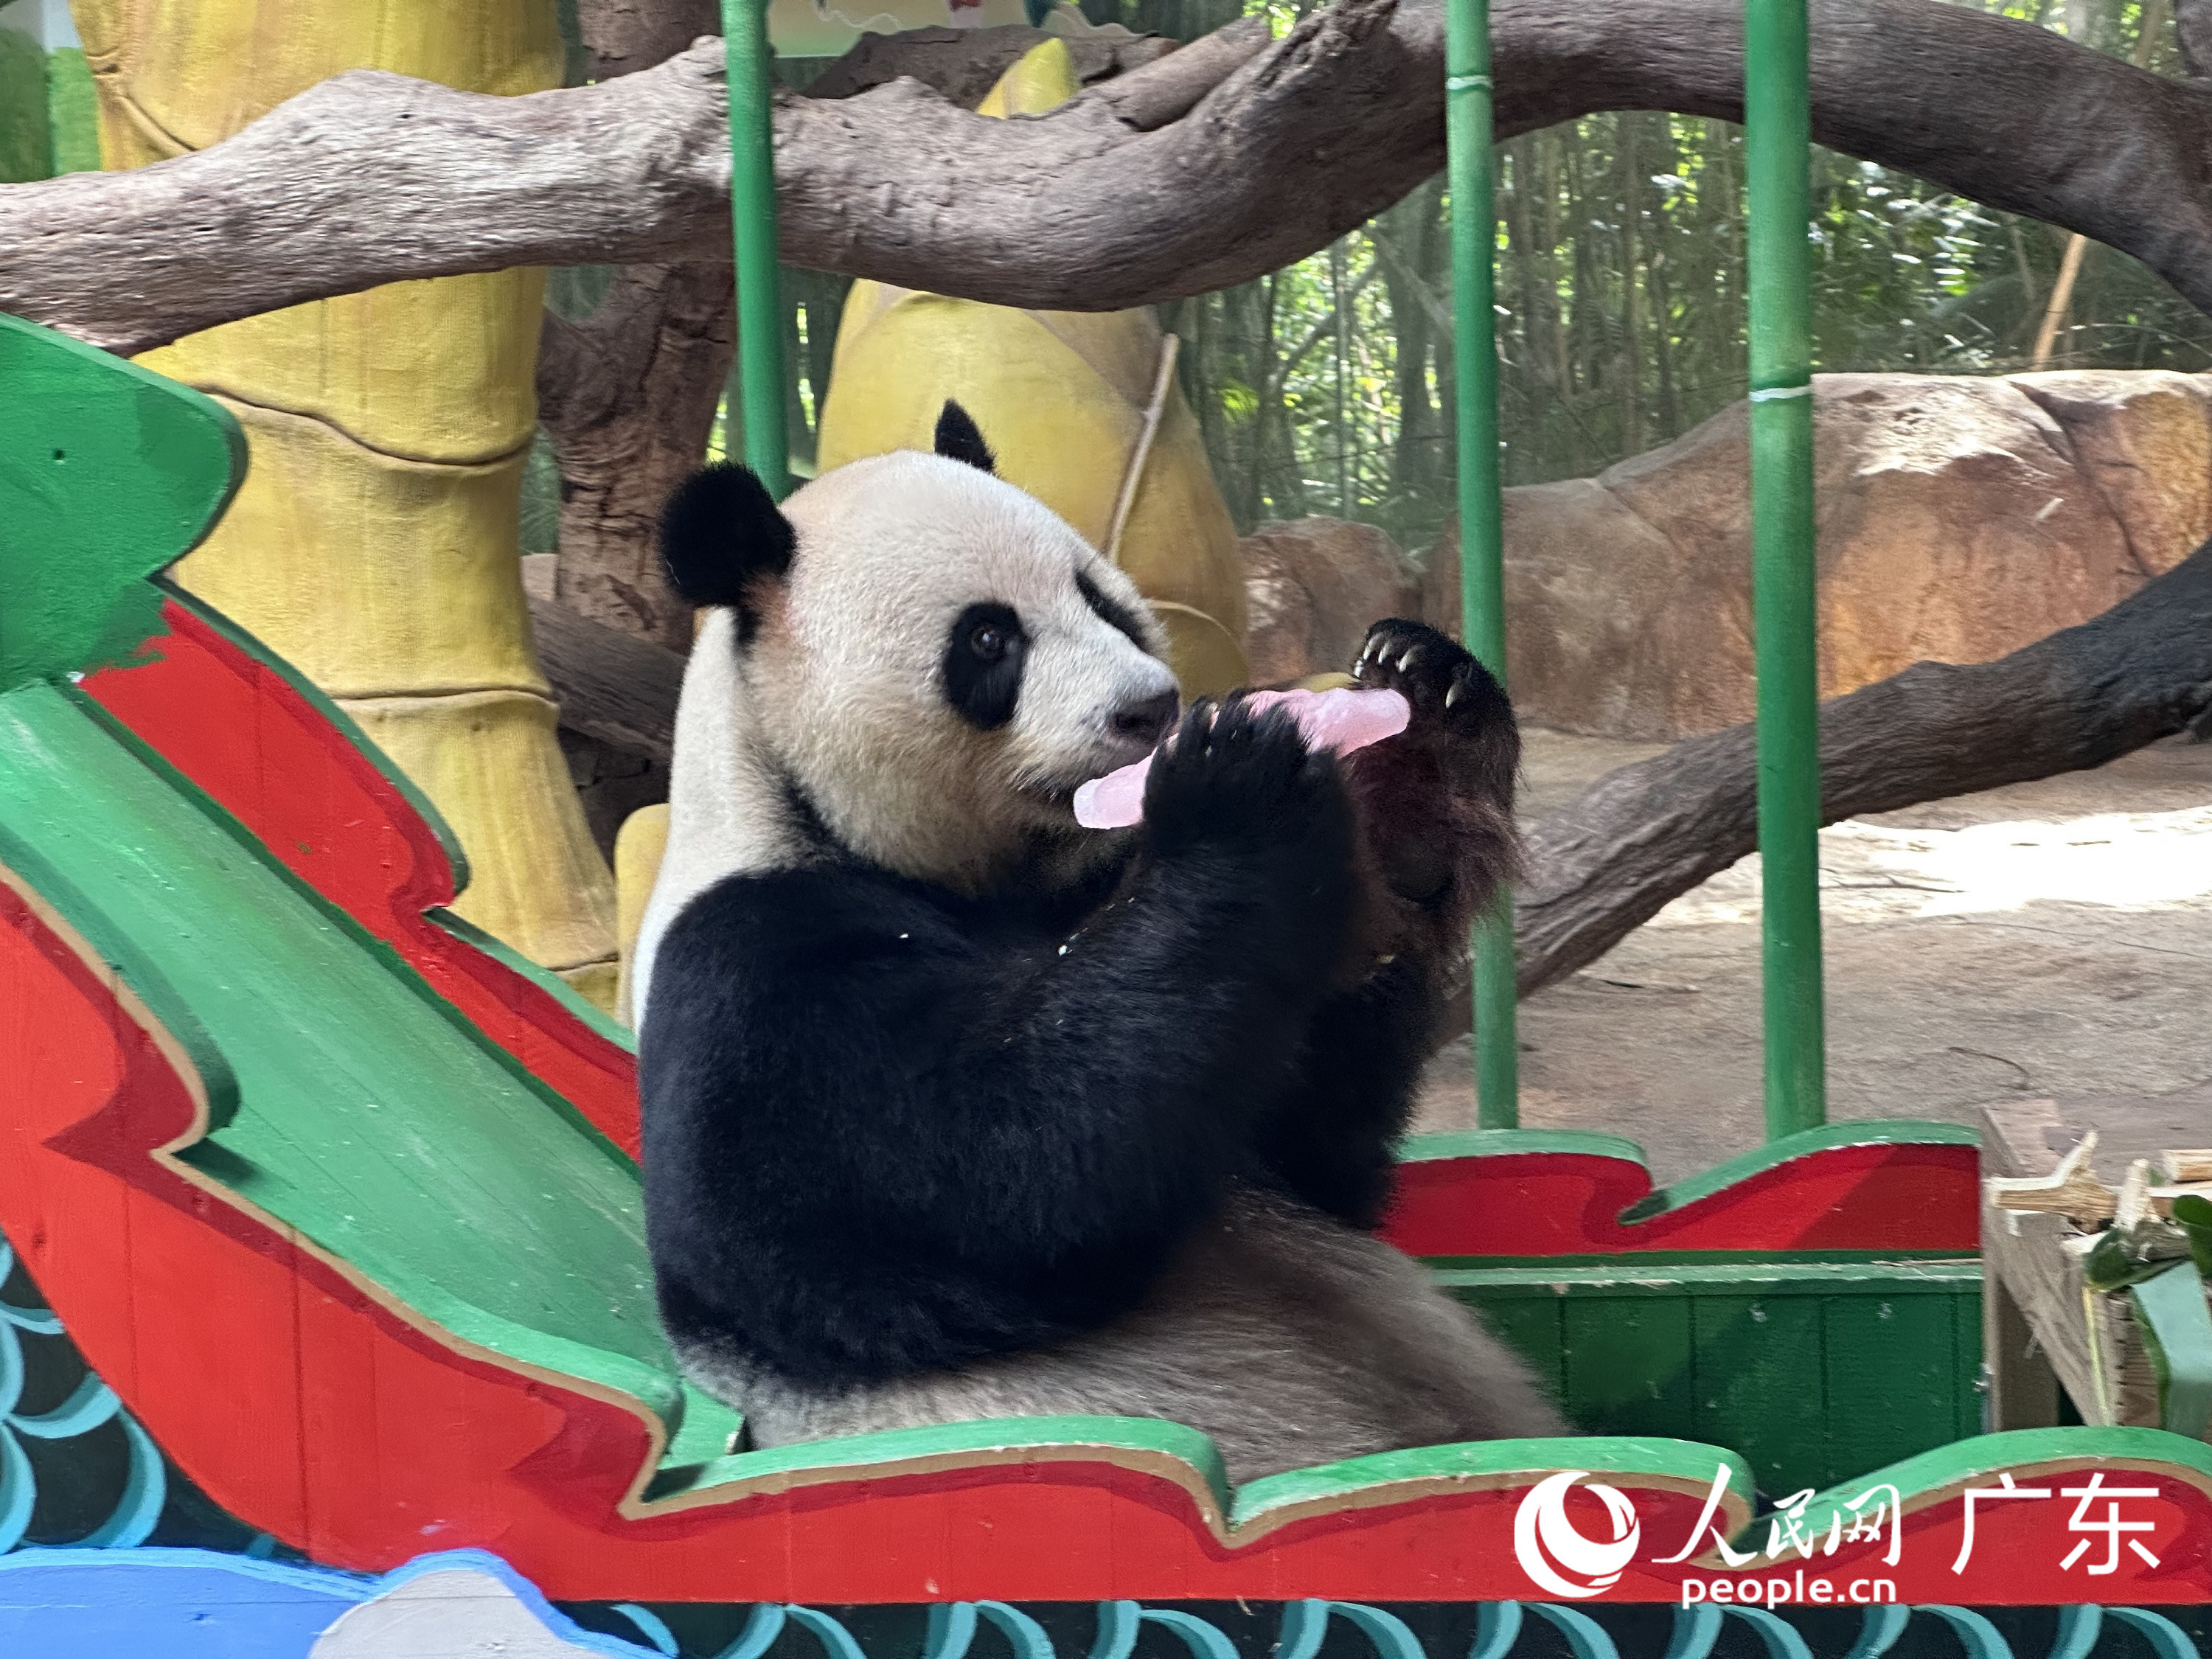 熊貓“帥帥”正在吃由葡萄果汁制成的“心形”冰塊。人民網 周睿攝